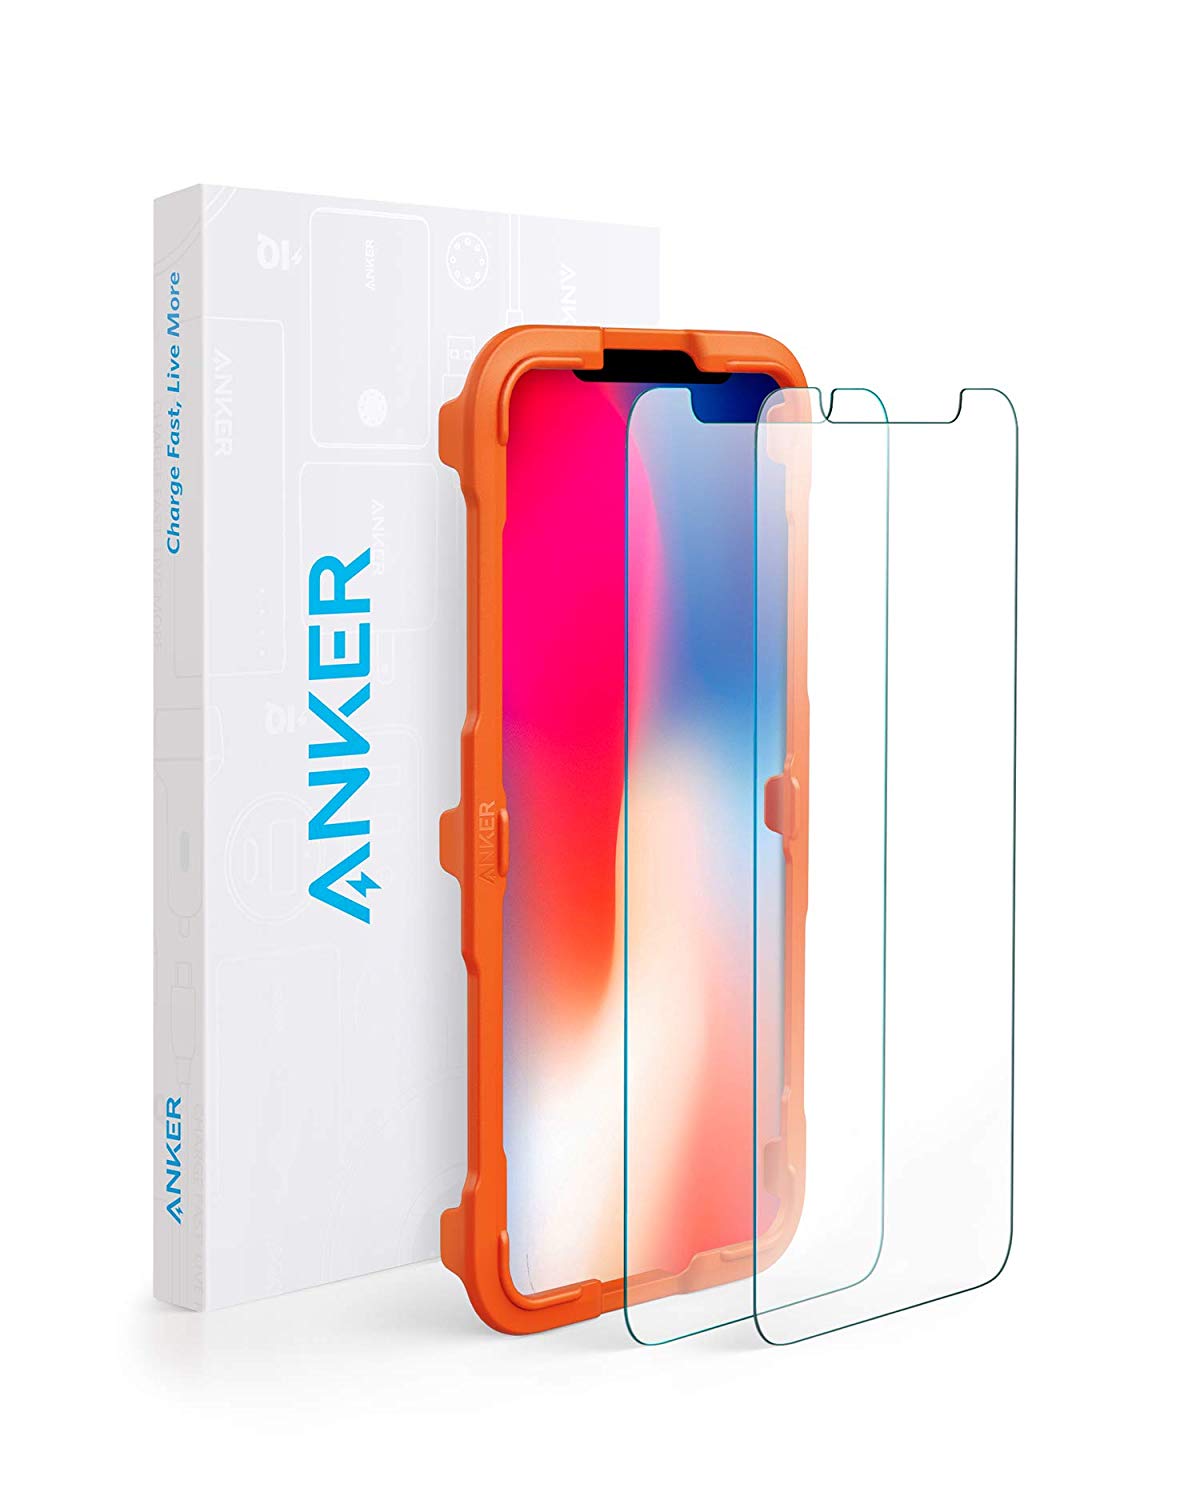 Anker、強化ガラス液晶保護フィルム｢GlassGuard｣の｢iPhone XS/XS Max/XR｣対応モデルを発売 − 各500個限定で10％オフに